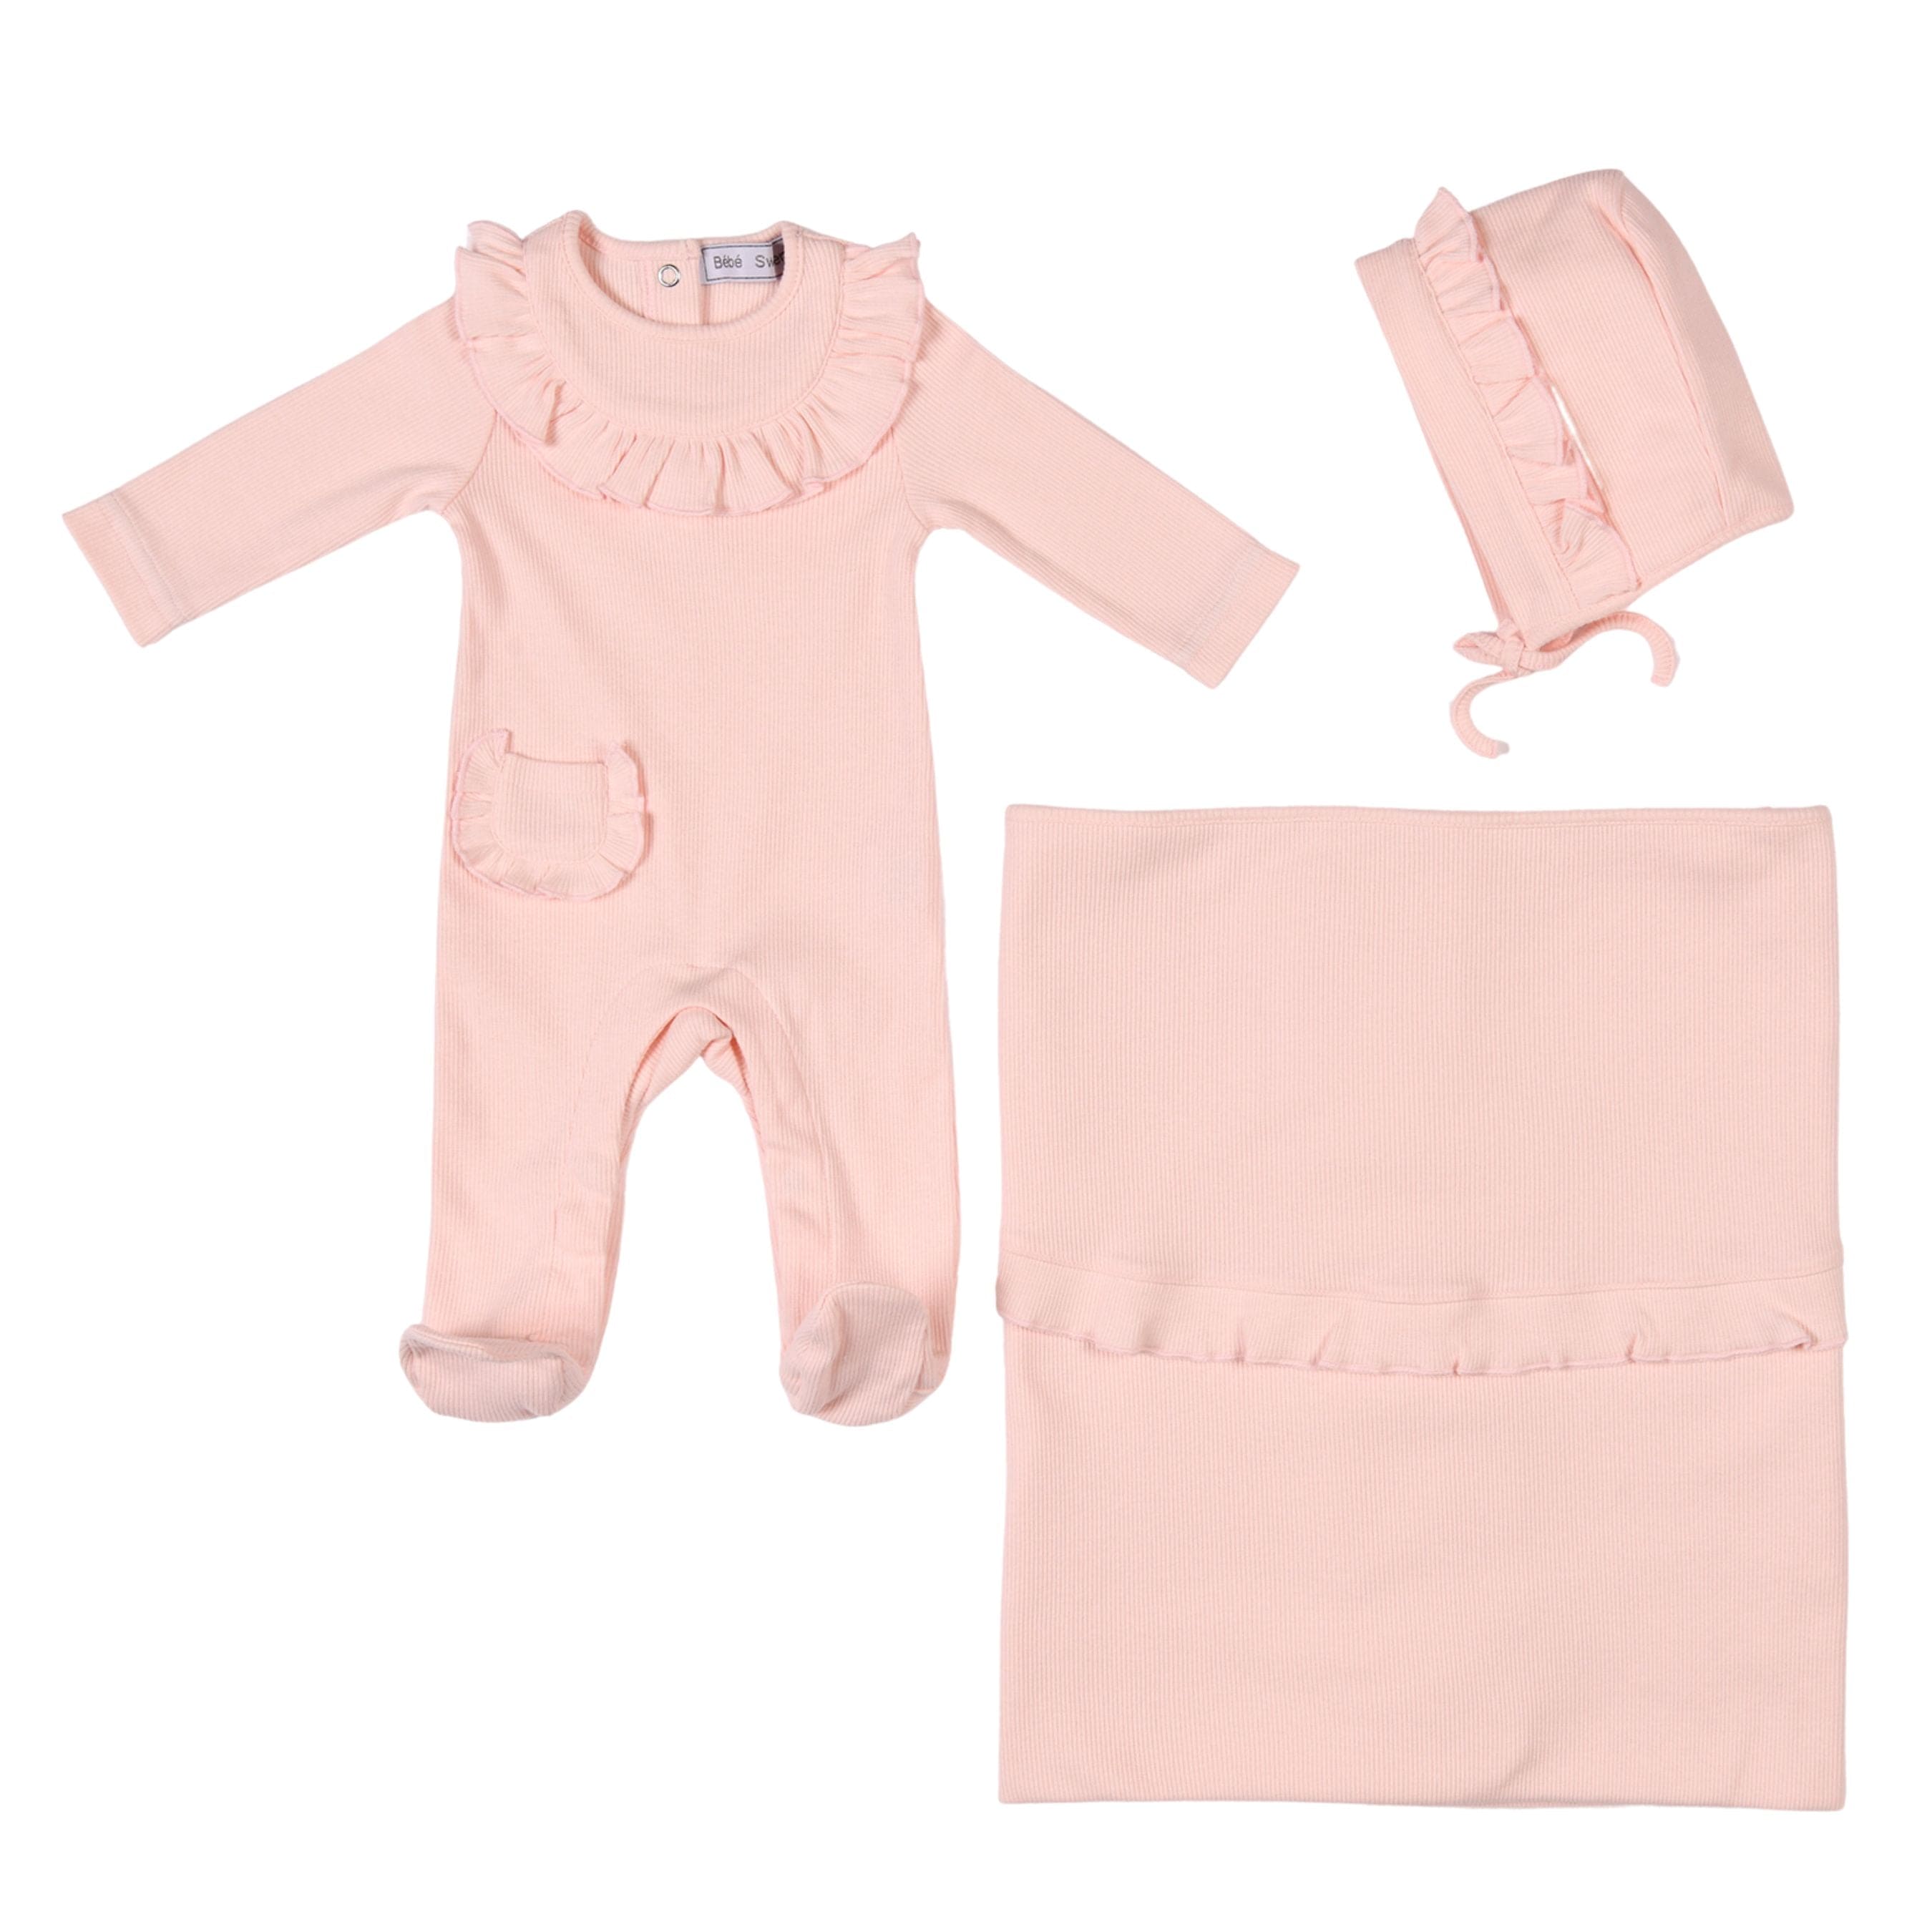 Emilia | Baby Girls Gift Box I Pink Ribbed Cotton Set (4)